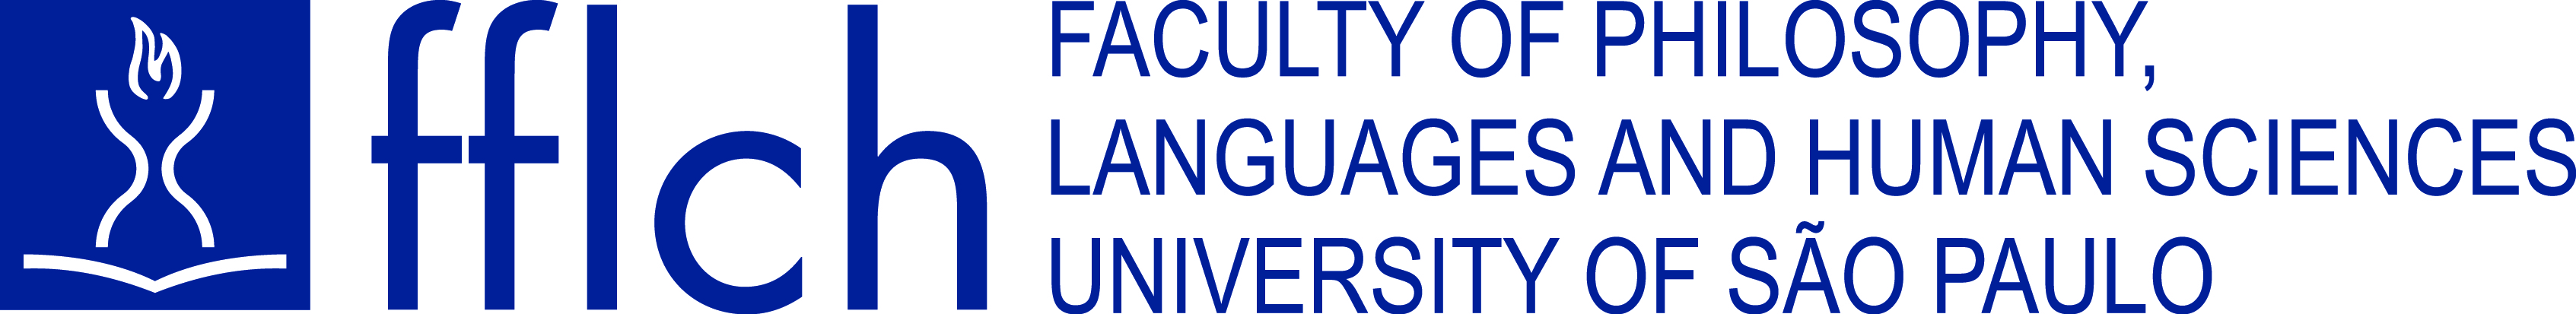 Logo horizontal em inglês da Faculdade de Filosofia, Letras e Ciências Humanas